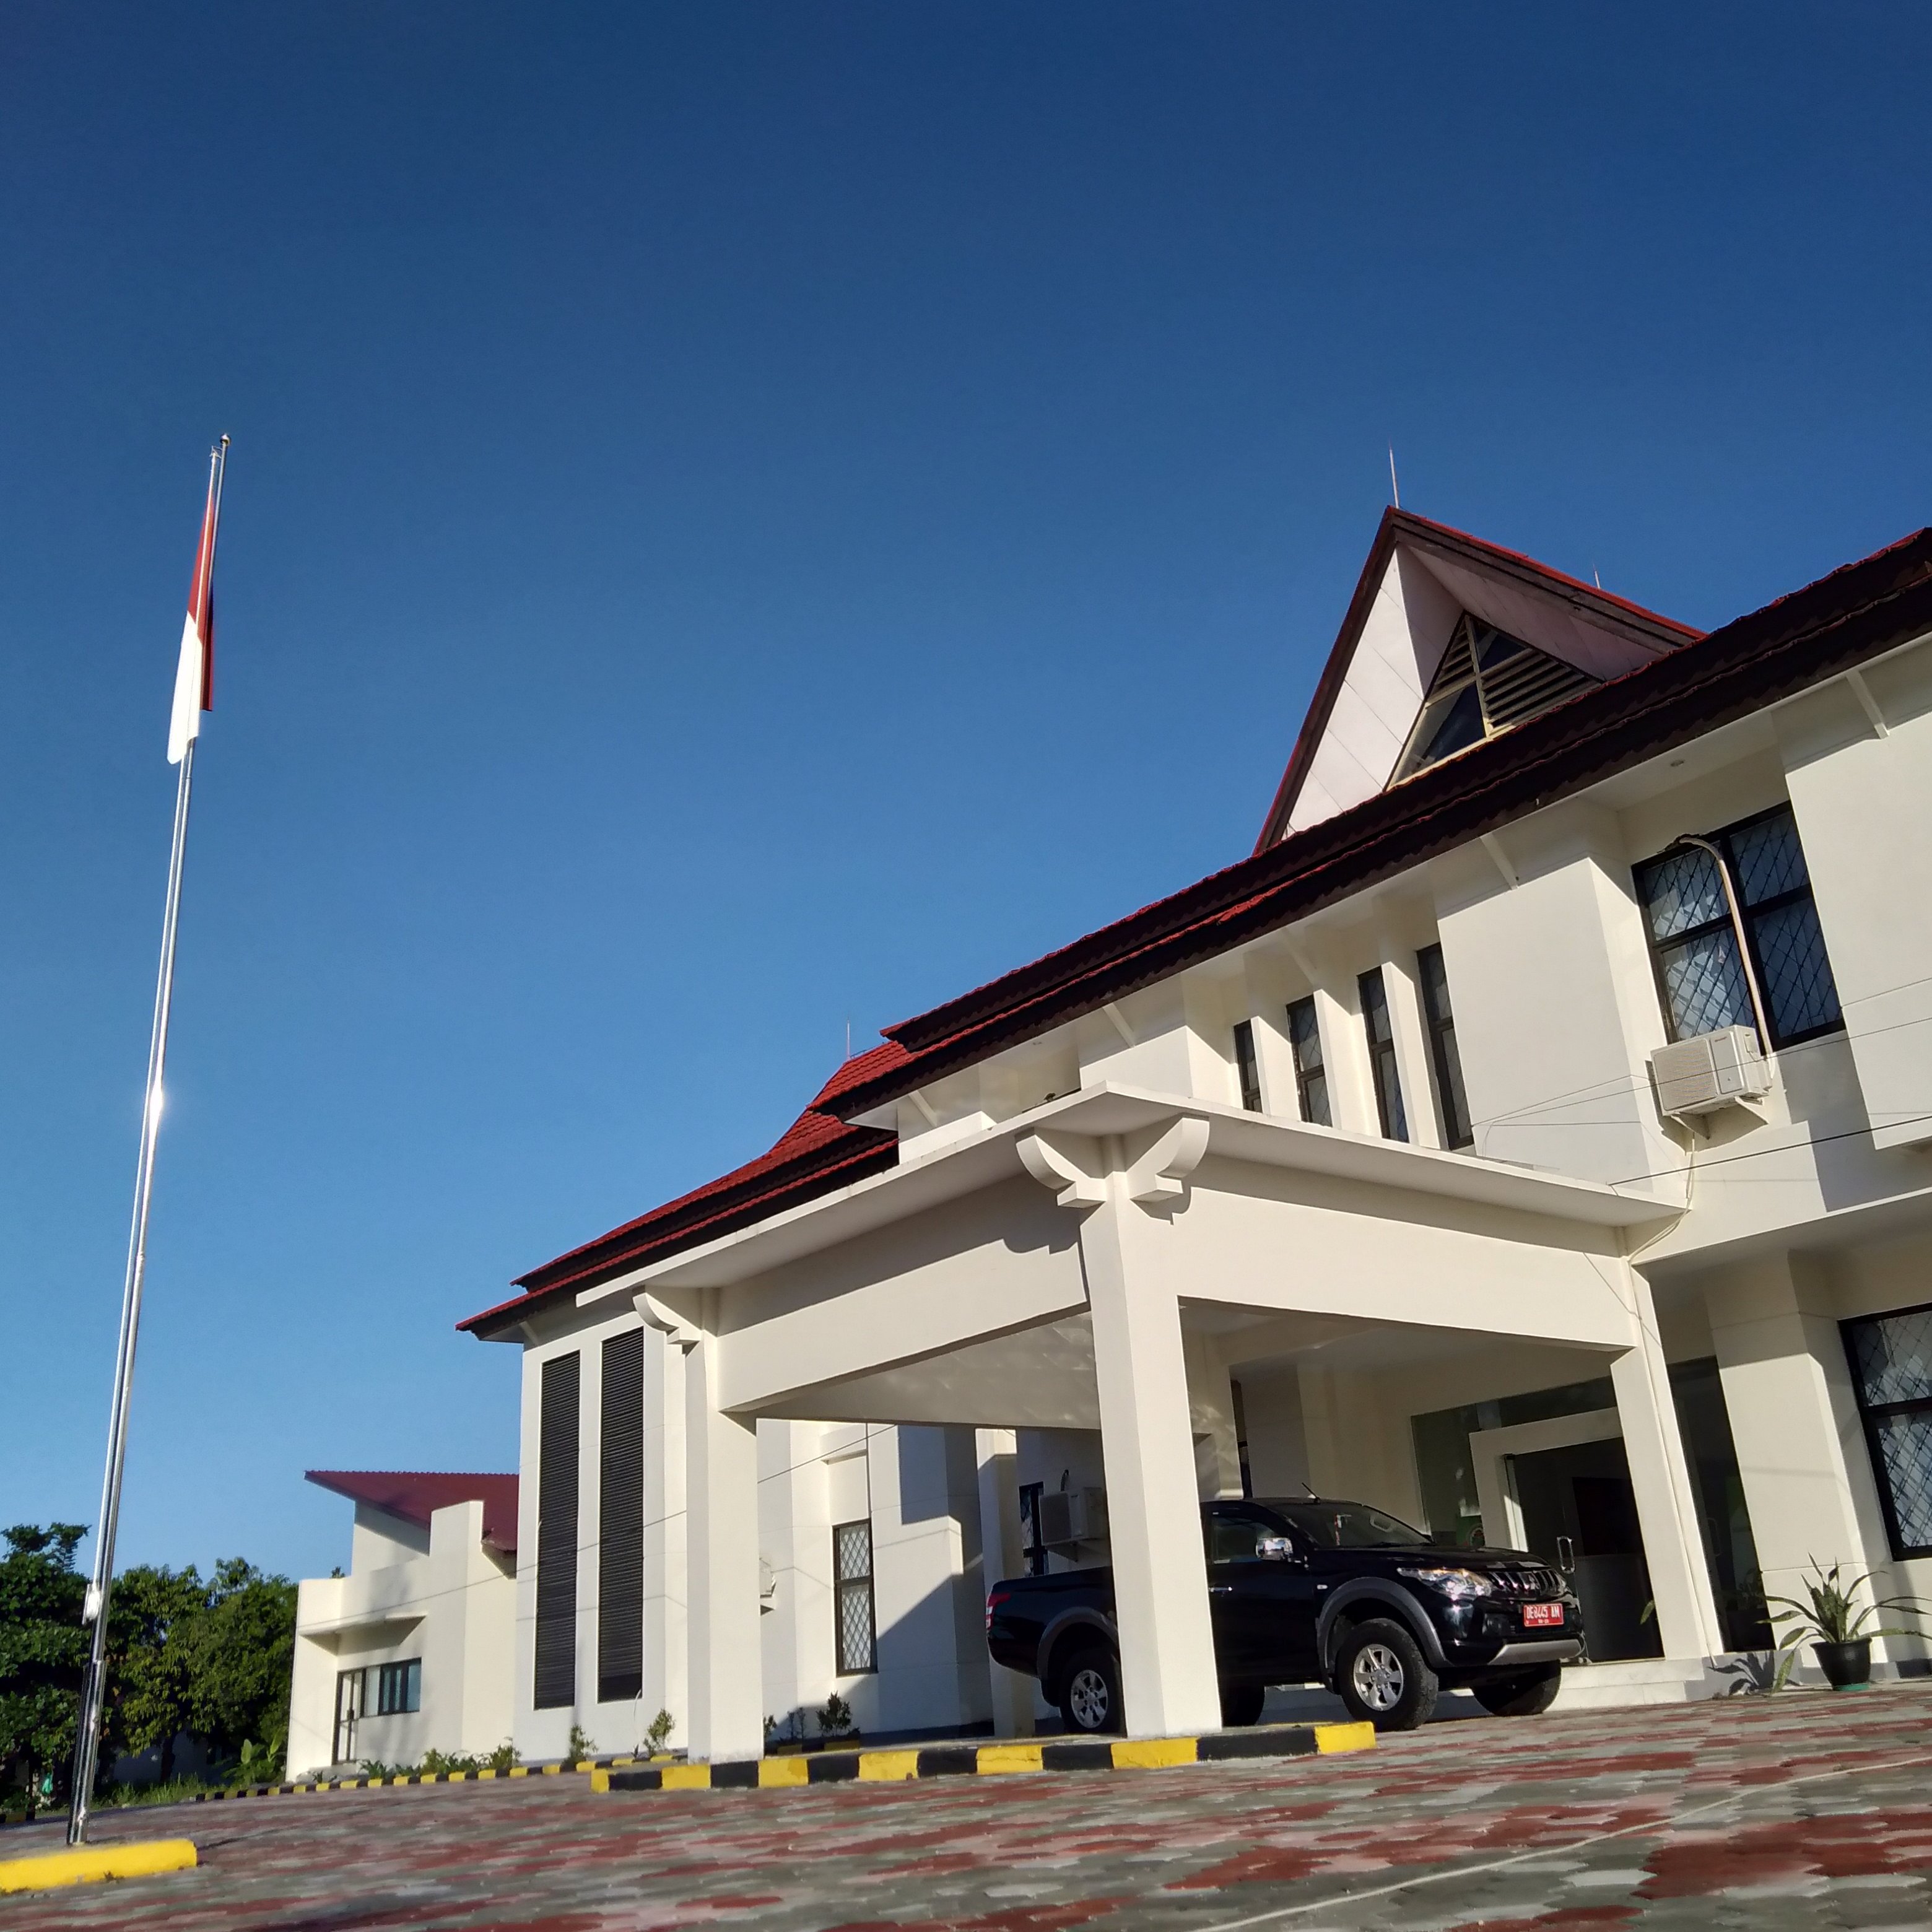 Balai Latihan Masyarakat Ambon
Kementerian Desa, Pembangunan Daerah Tertinggal, dan Transmigrasi